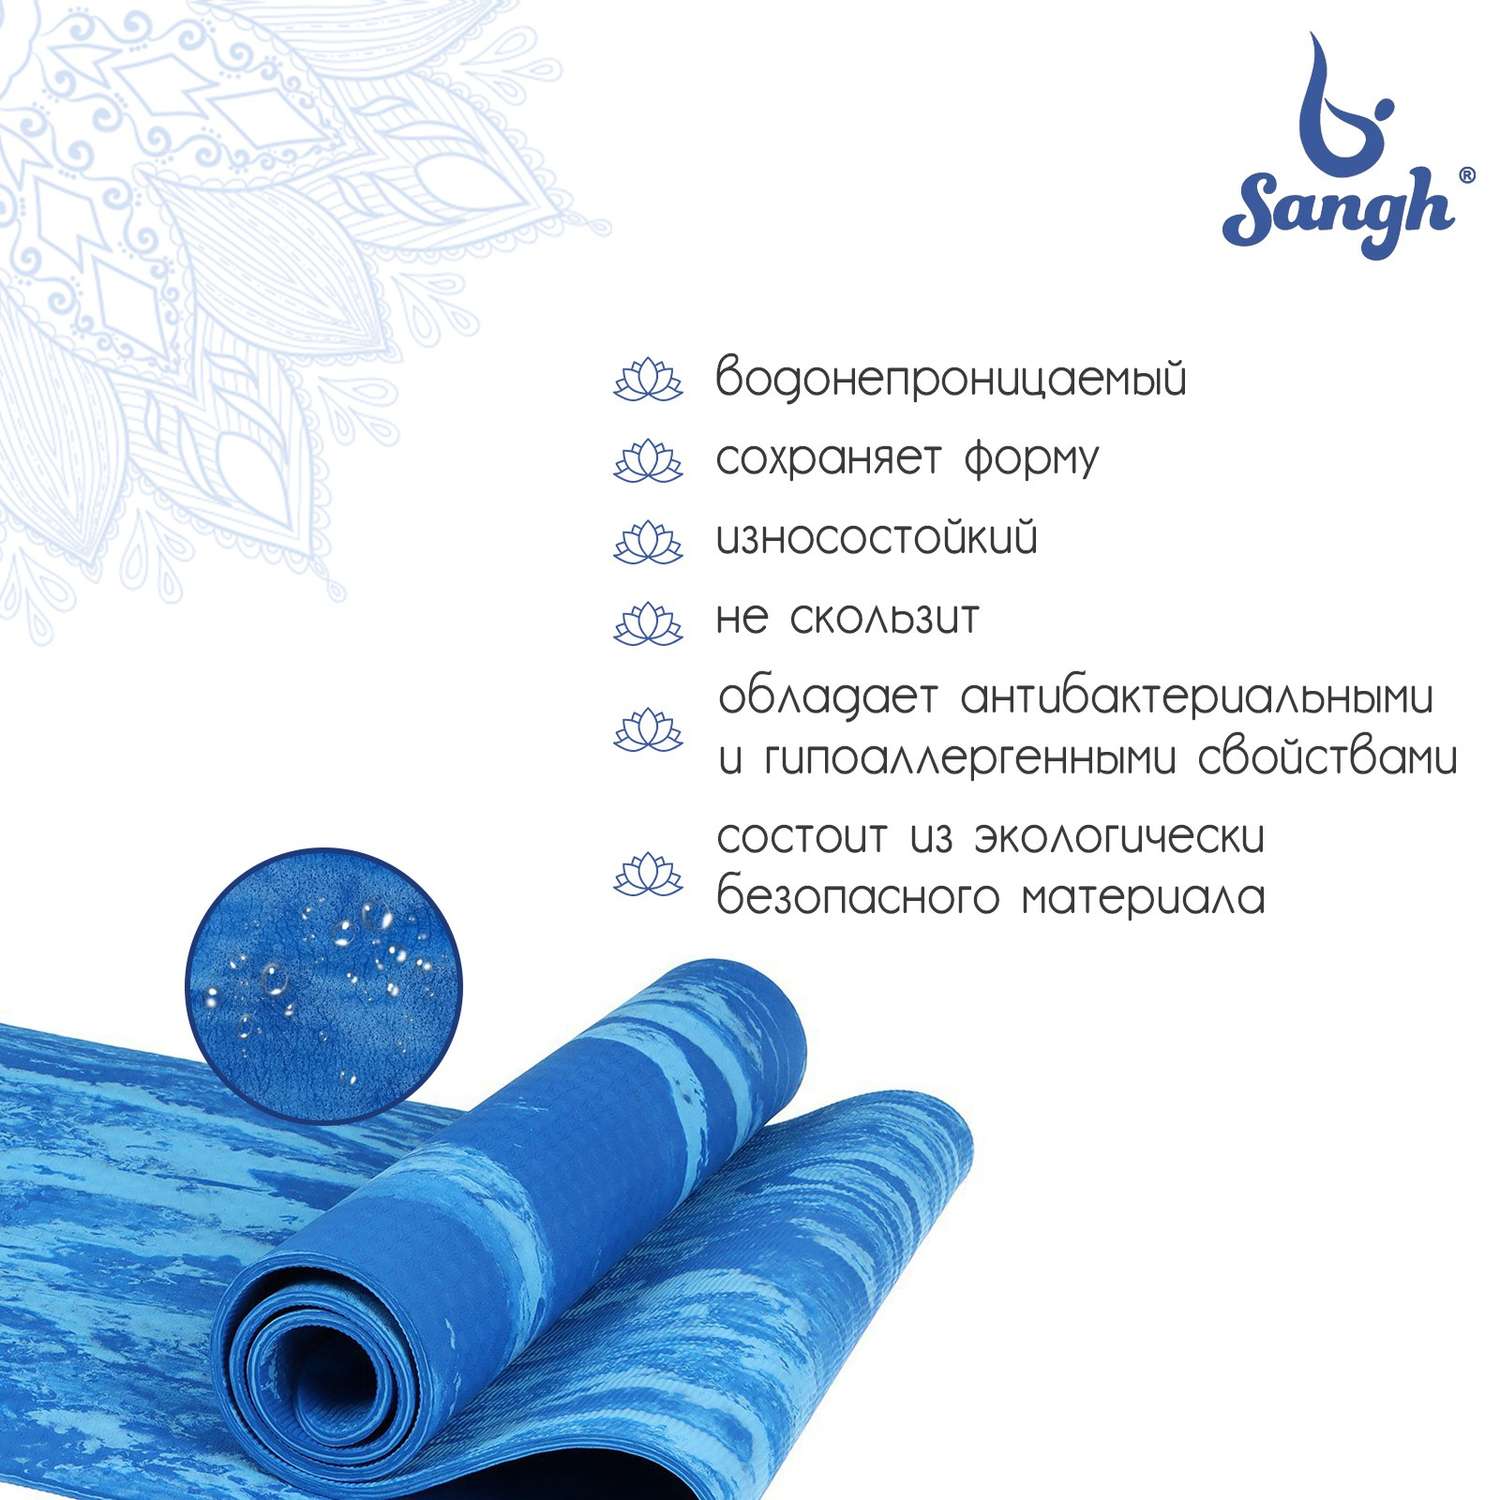 Коврик Sangh 183 х 61 х 0.8 см. цвет синий - фото 2